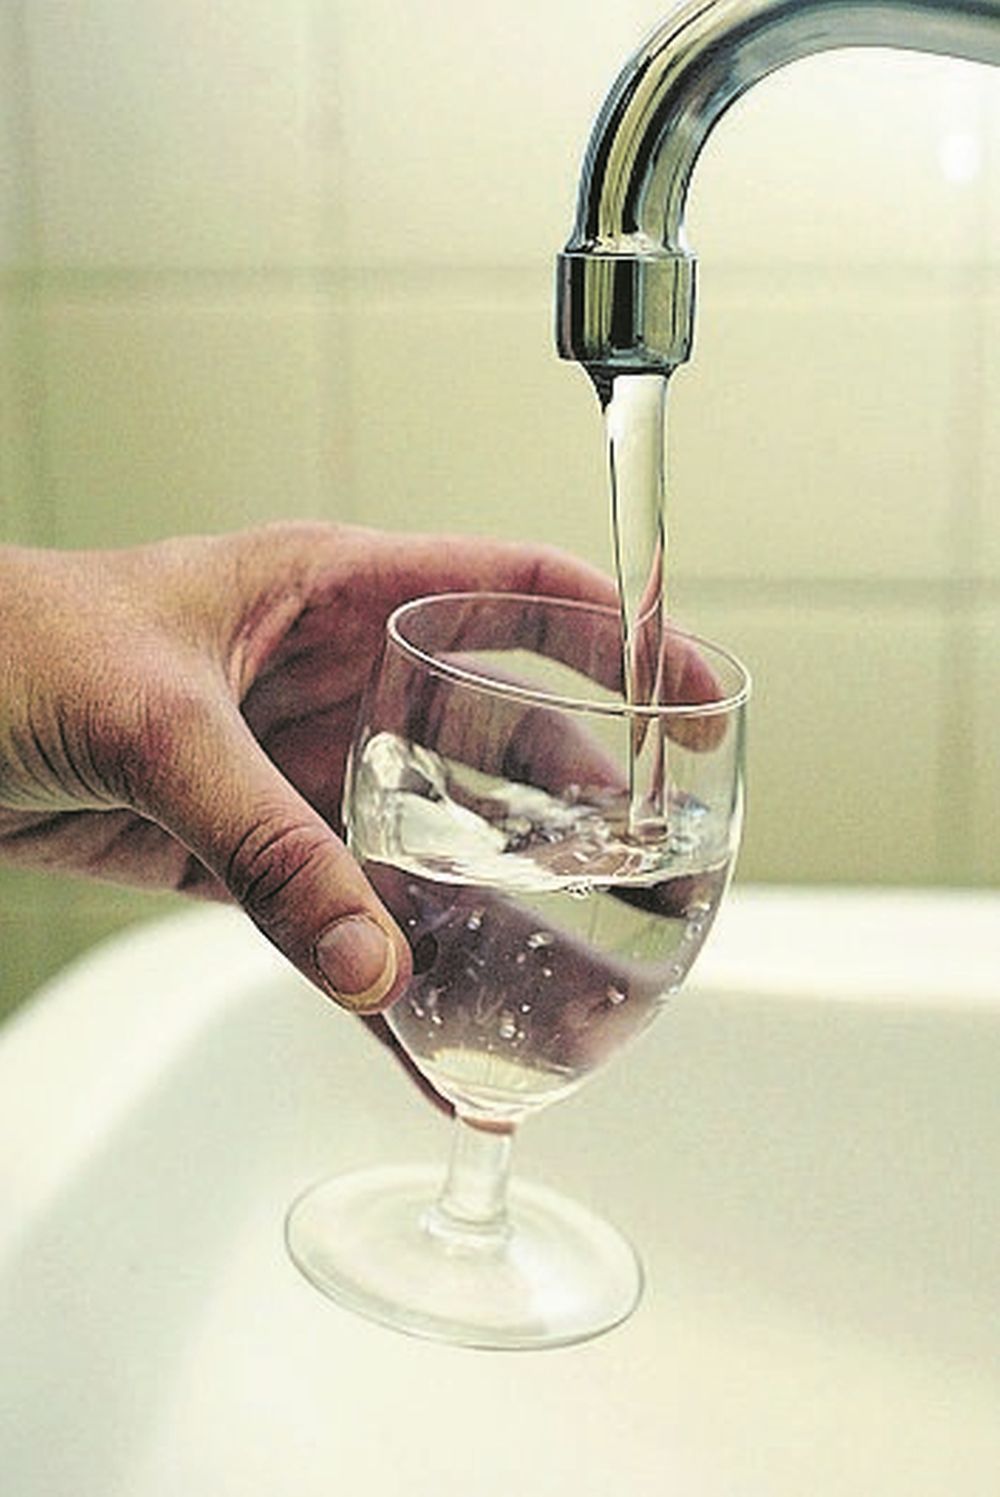 Dans 28 communes zurichoises, l'eau reste potable pour les consommateurs, malgré la présence de pesticides en trop grand nombre dans certaines sources. 